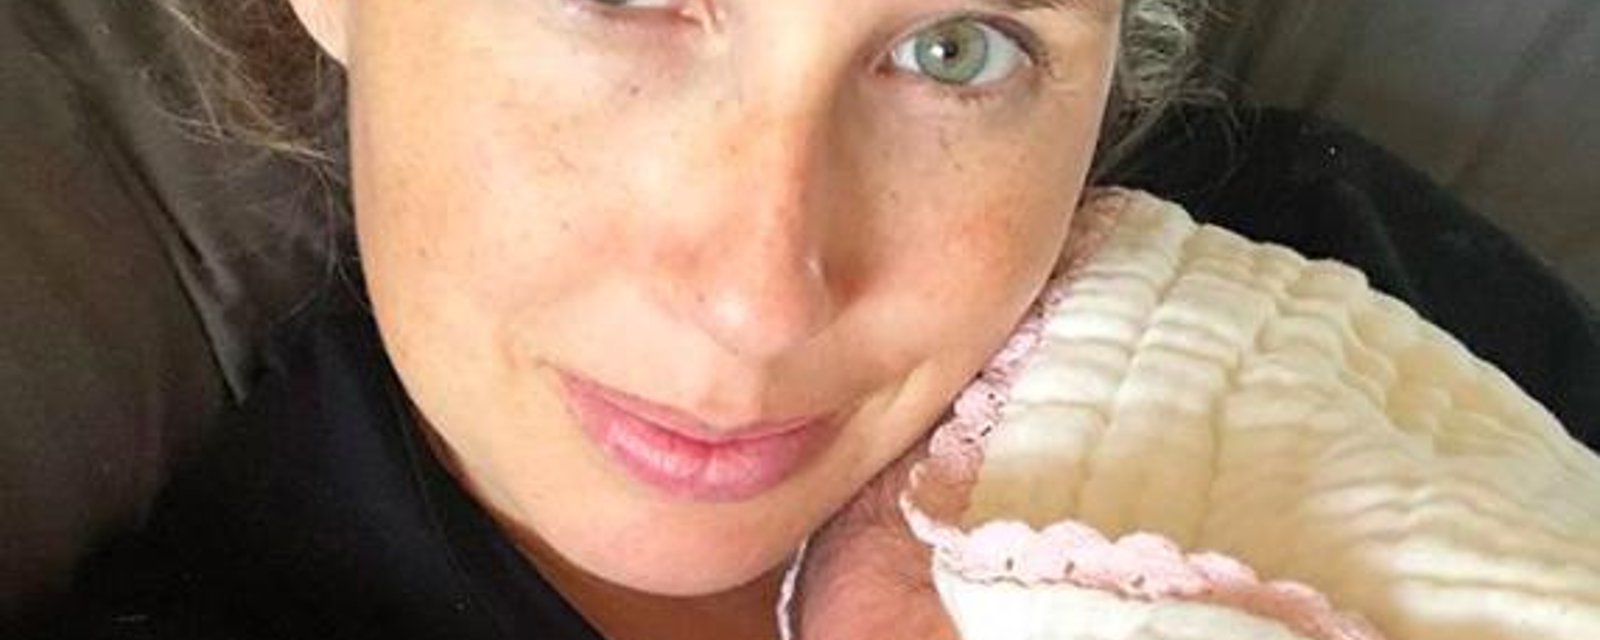 Maïka Desnoyers donne finalement des nouvelles sur les problèmes de santé de son nouveau-né